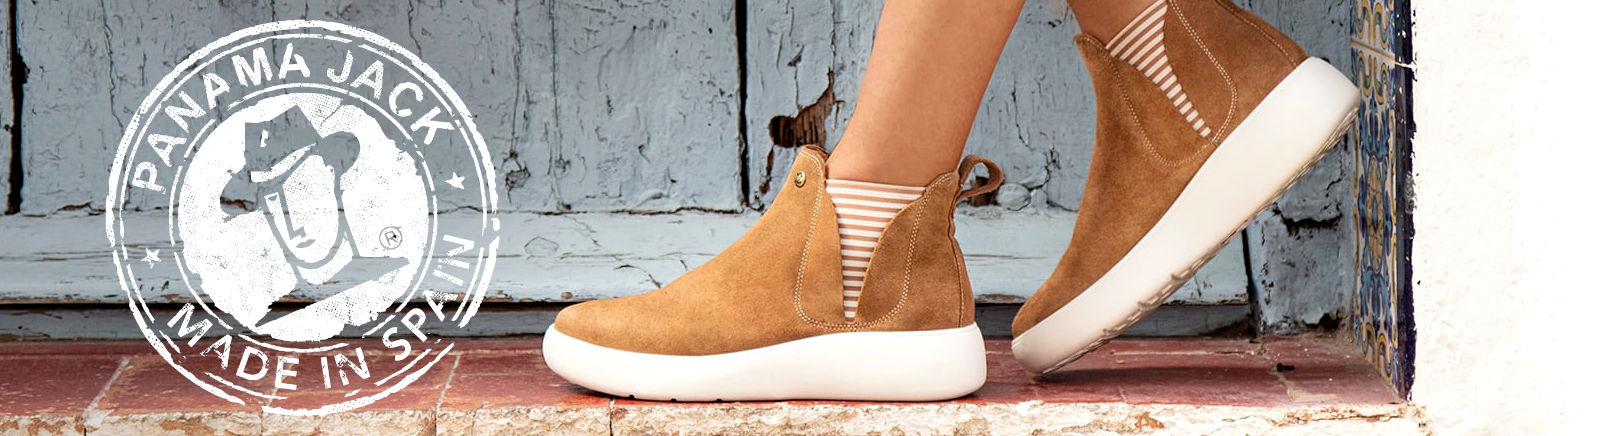 Panama Jack Schuhe: Stiefel & Sandalen für Damen bei GISY kaufen